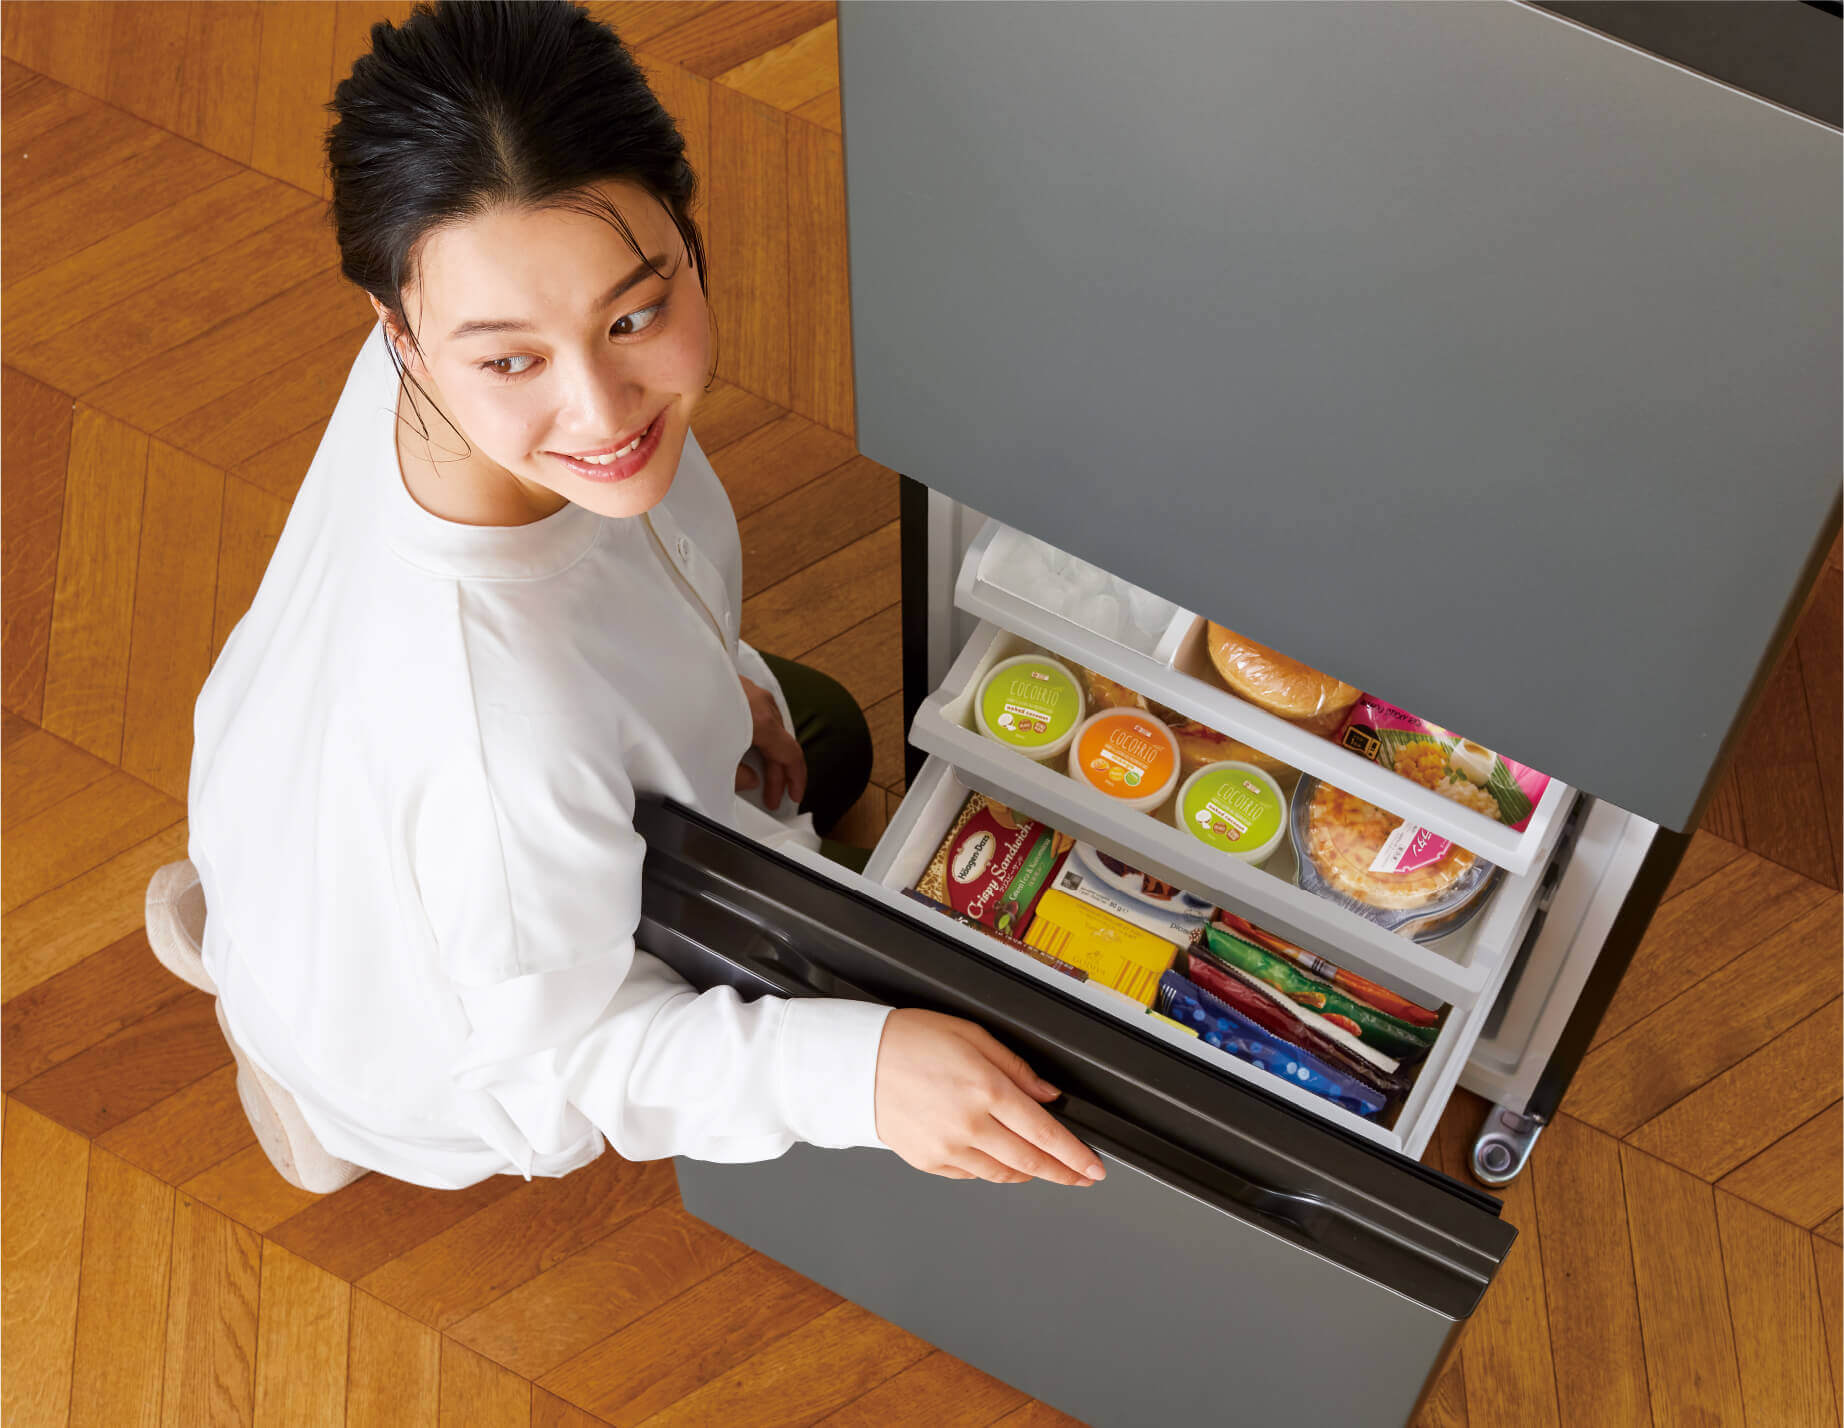 H-81【ご来店頂ける方限定】AQUAの2ドア冷凍冷蔵庫です - キッチン家電